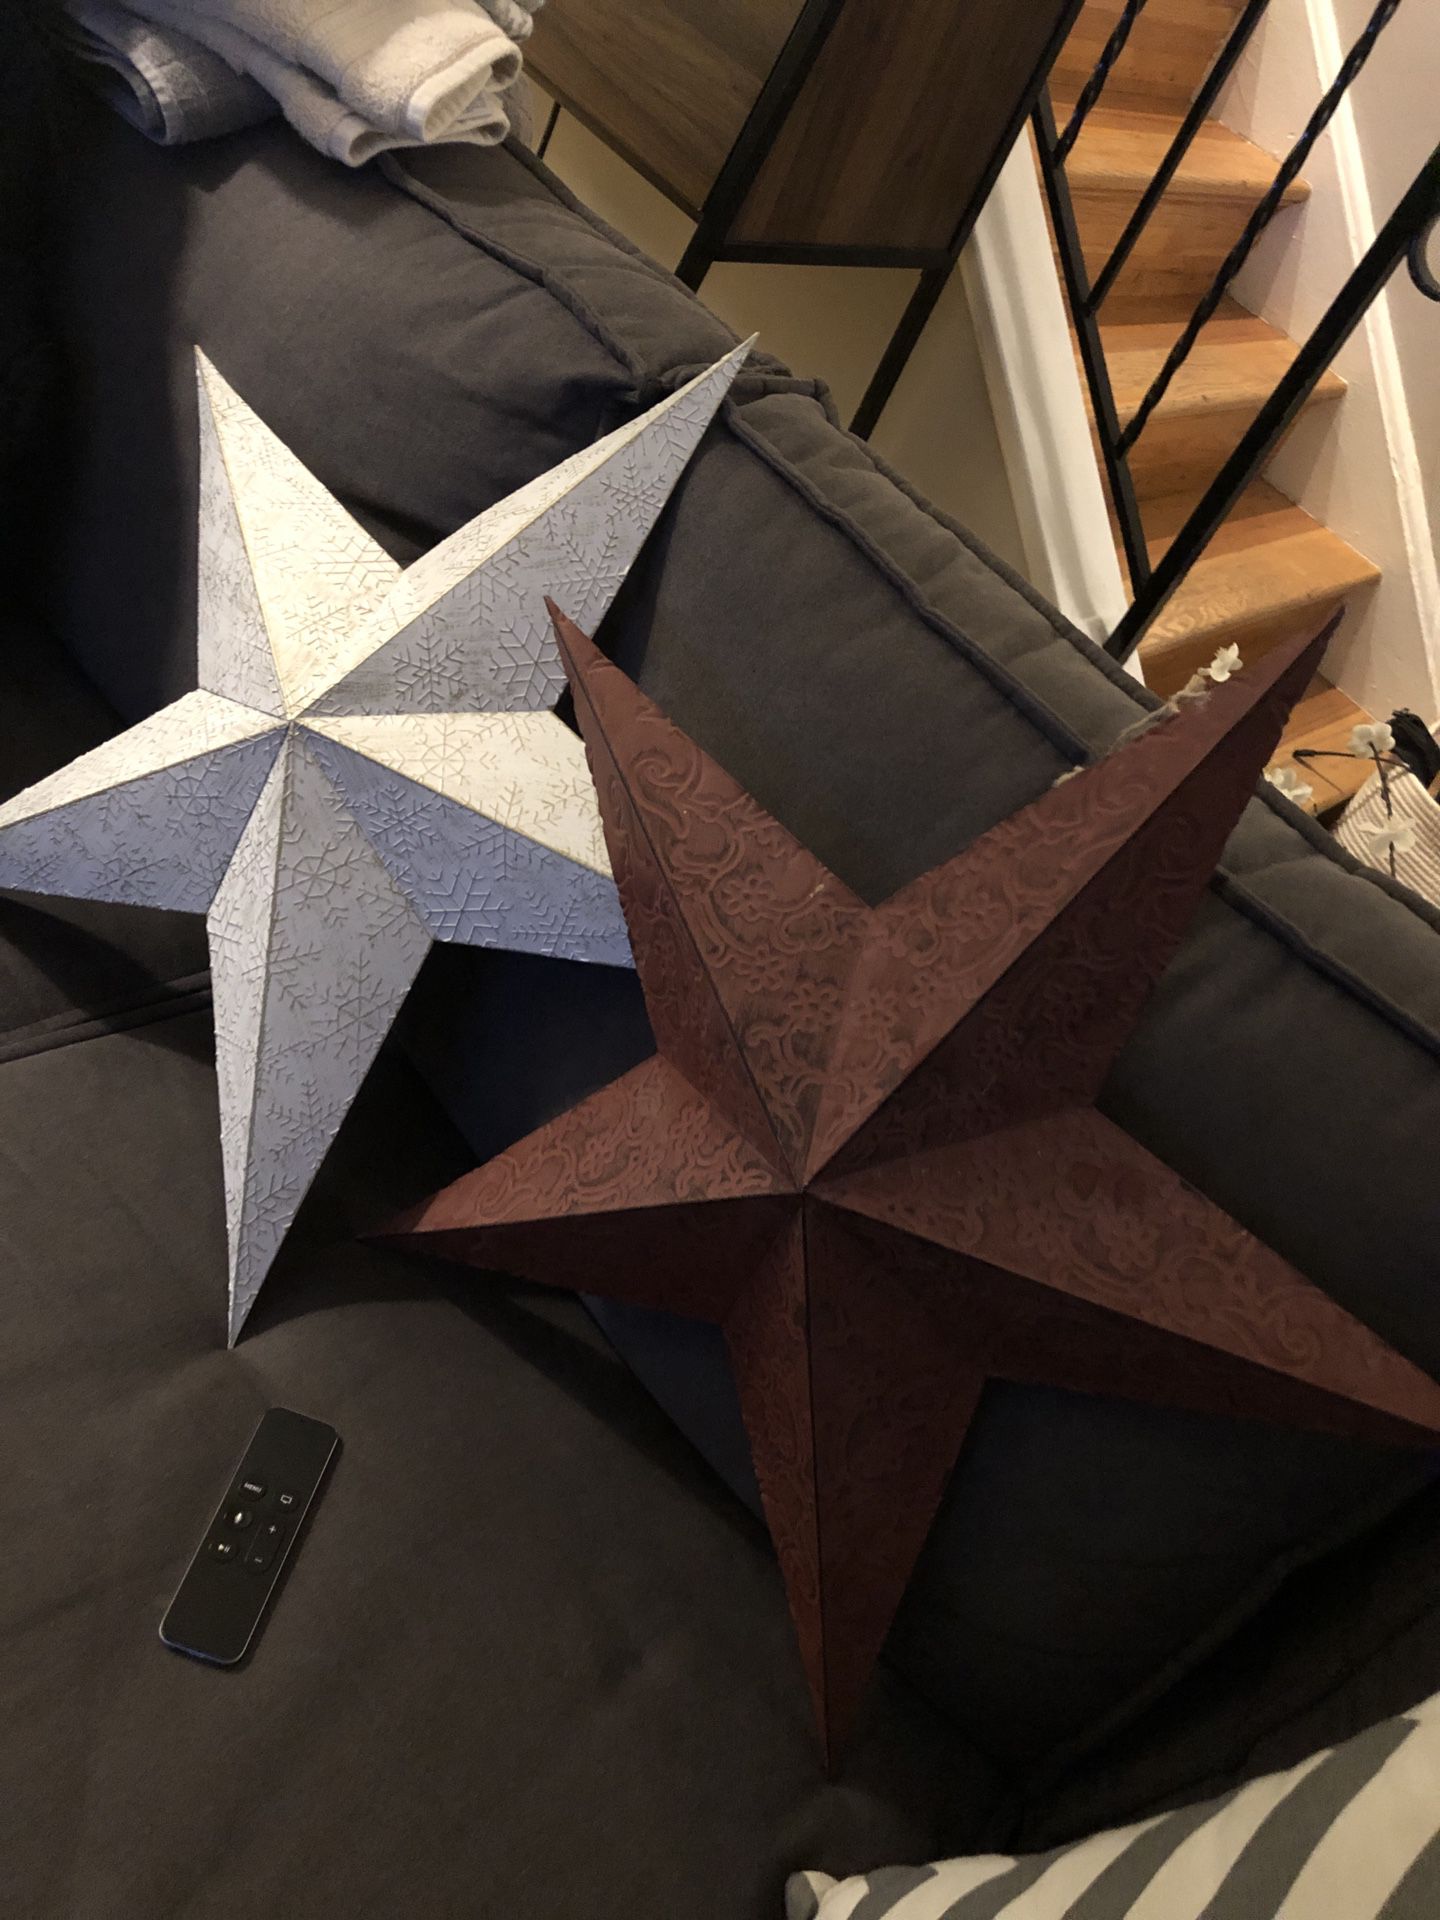 Decorative Stars